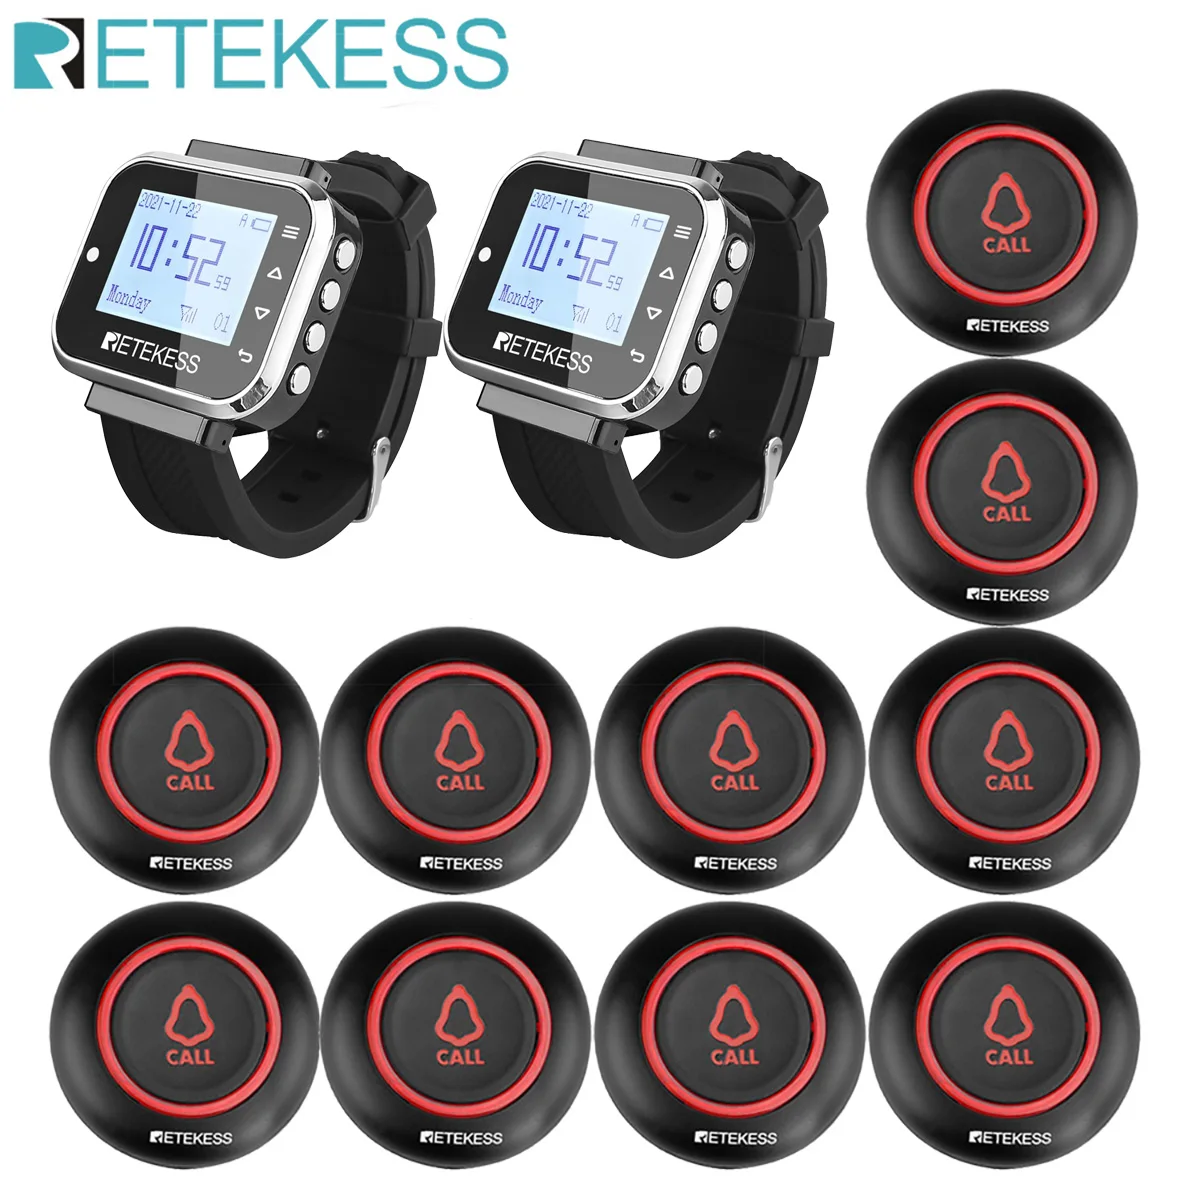 

Retekess ресторан пейджер Беспроводная система вызова 7 языков 2 TD110 часы приемник + 10 TD019 кнопка для кальяна Бар кофе